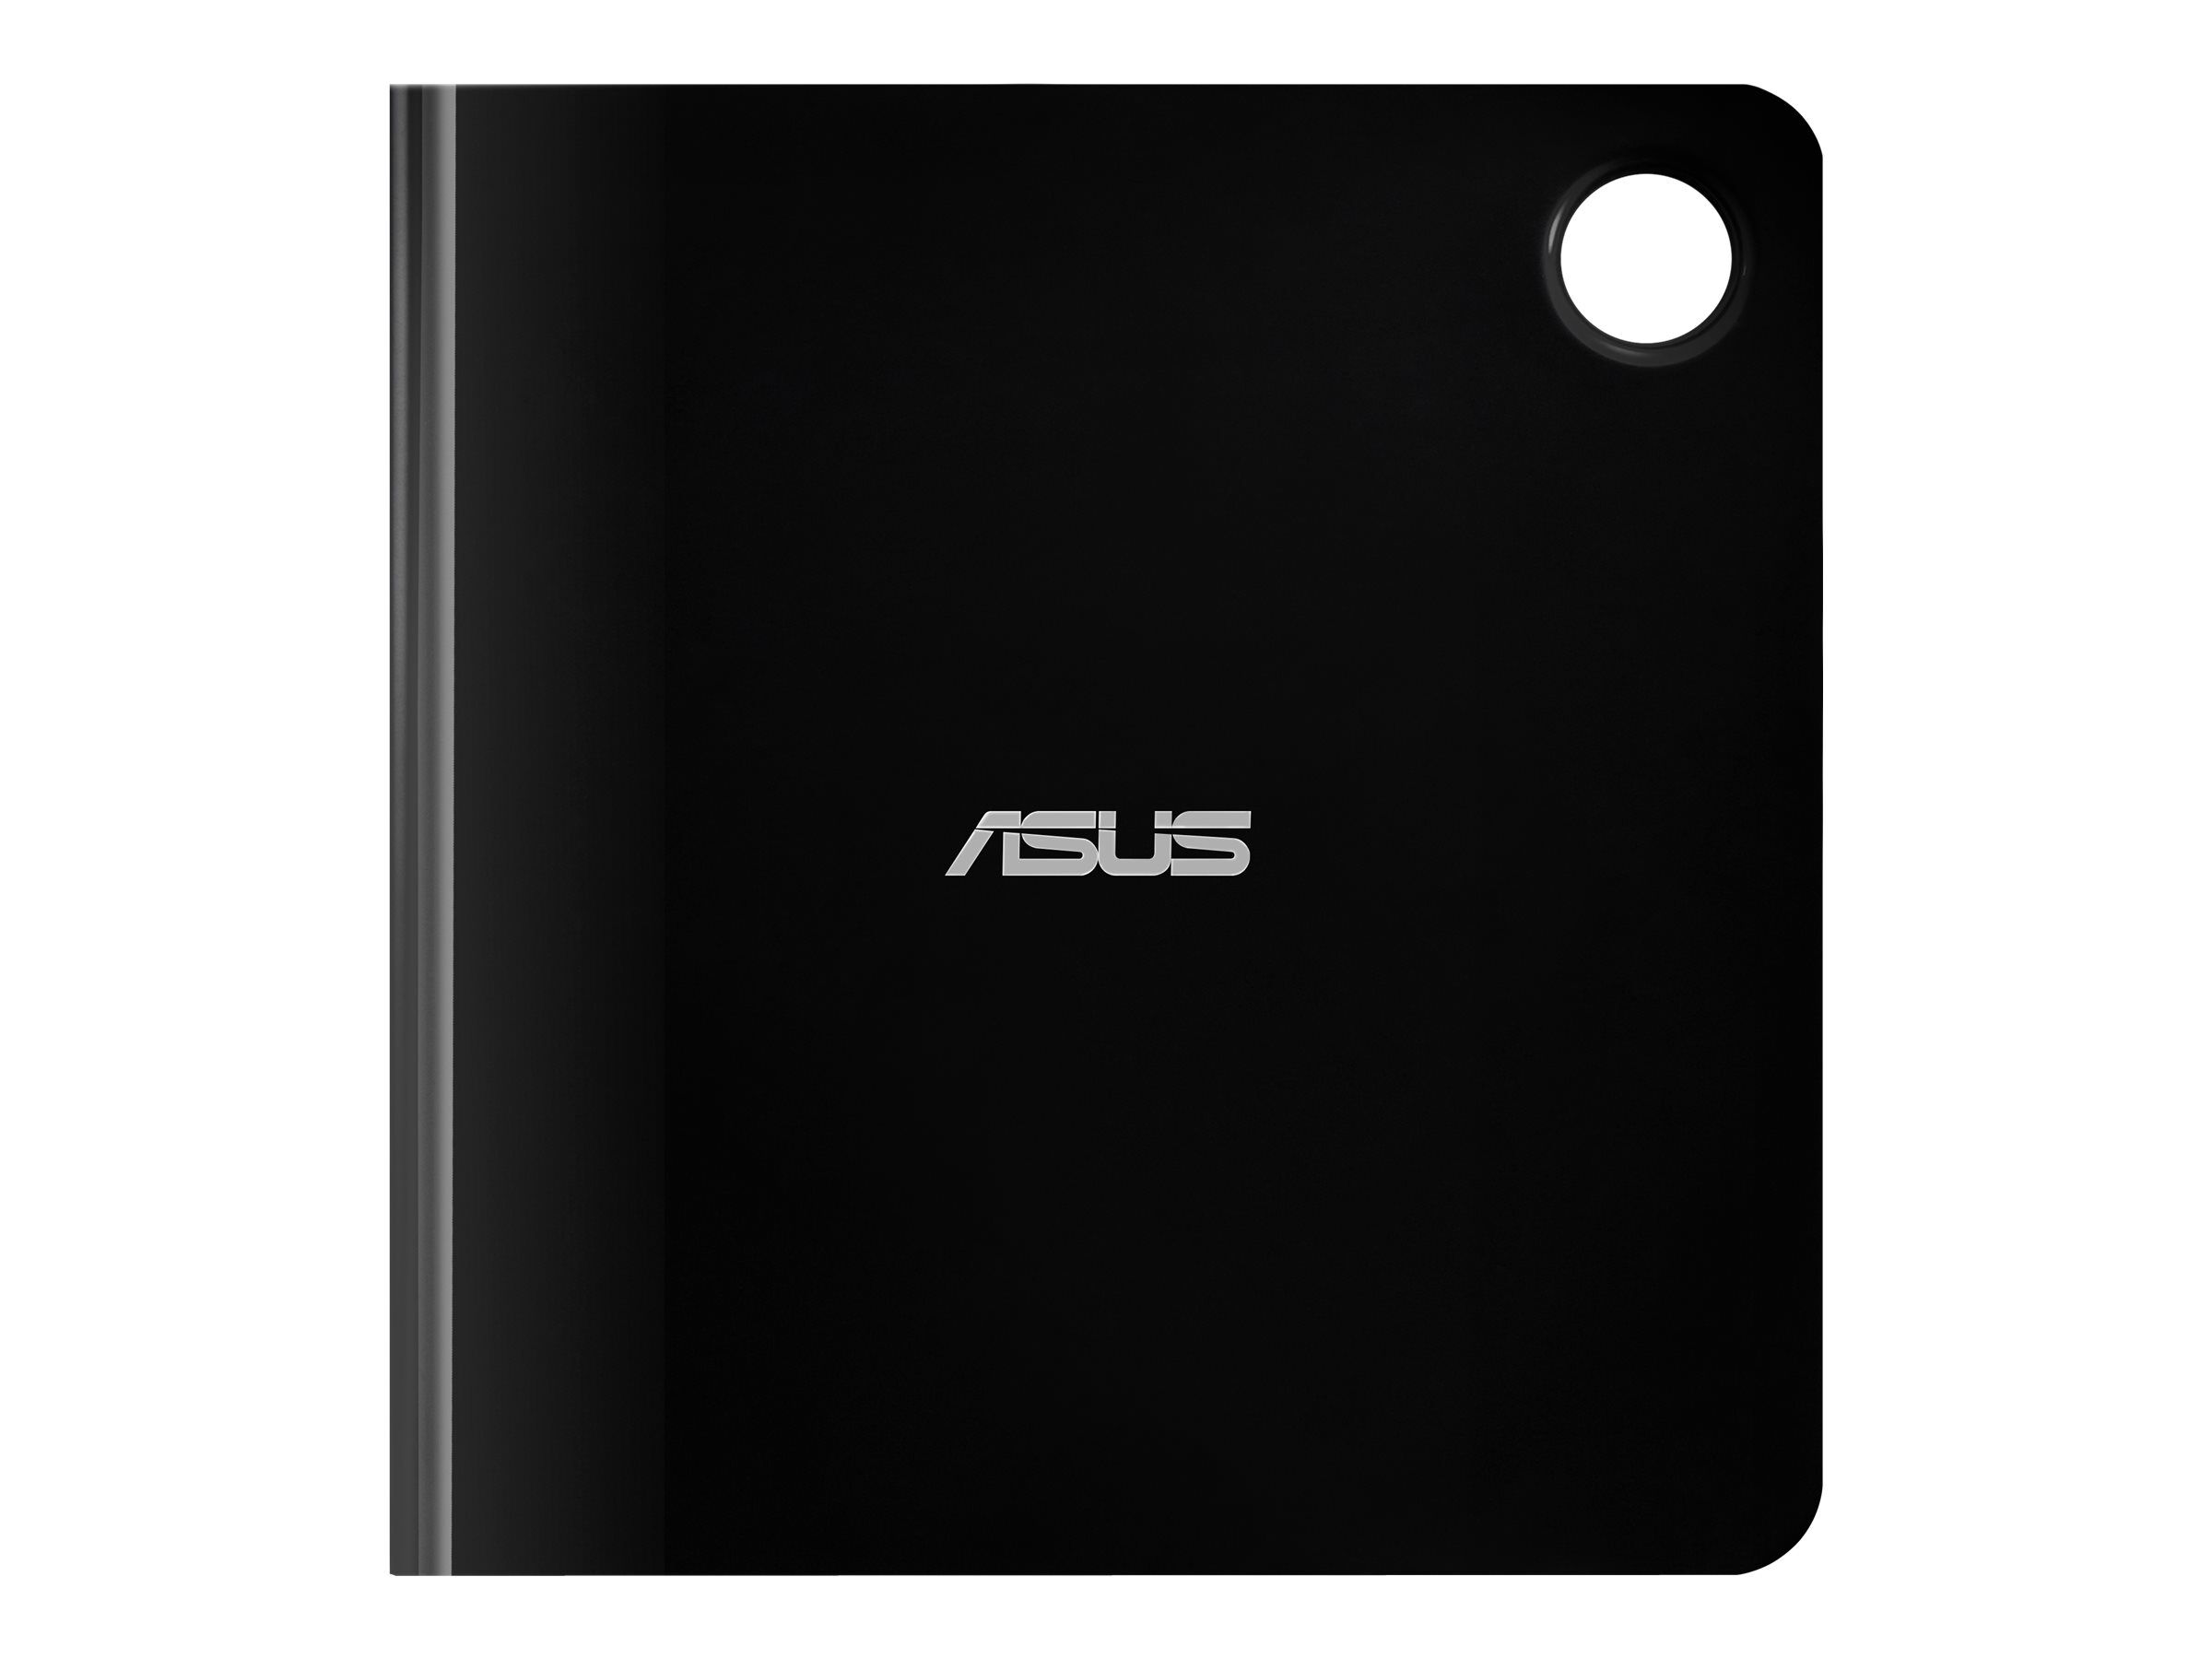 Asus SBW-06D5H-U lecteur de disques optiques Blu-Ray RW Noir, Argent